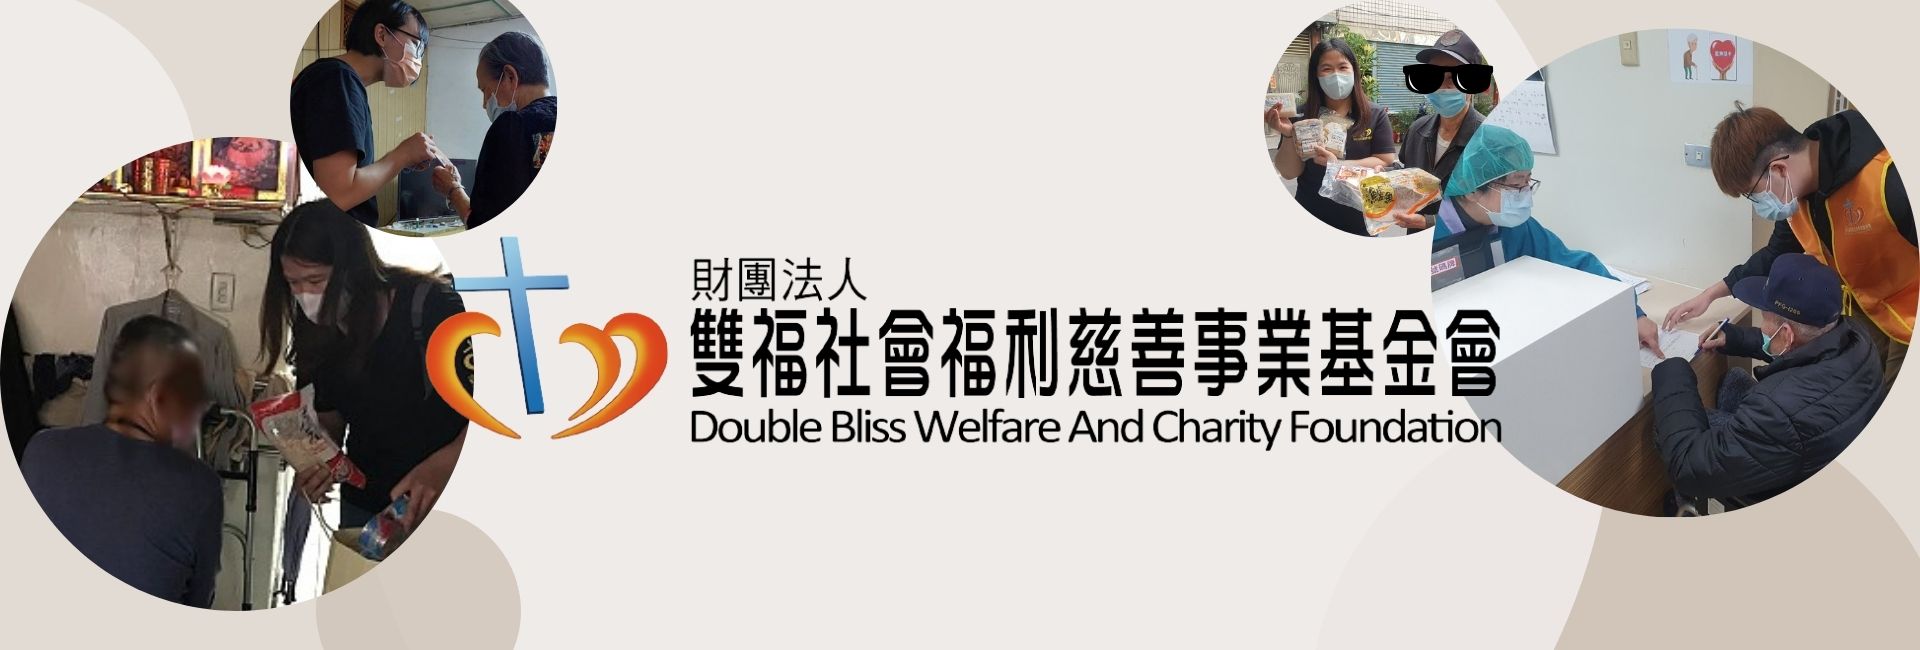 財團法人雙福社會福利慈善事業基金會-募款活動